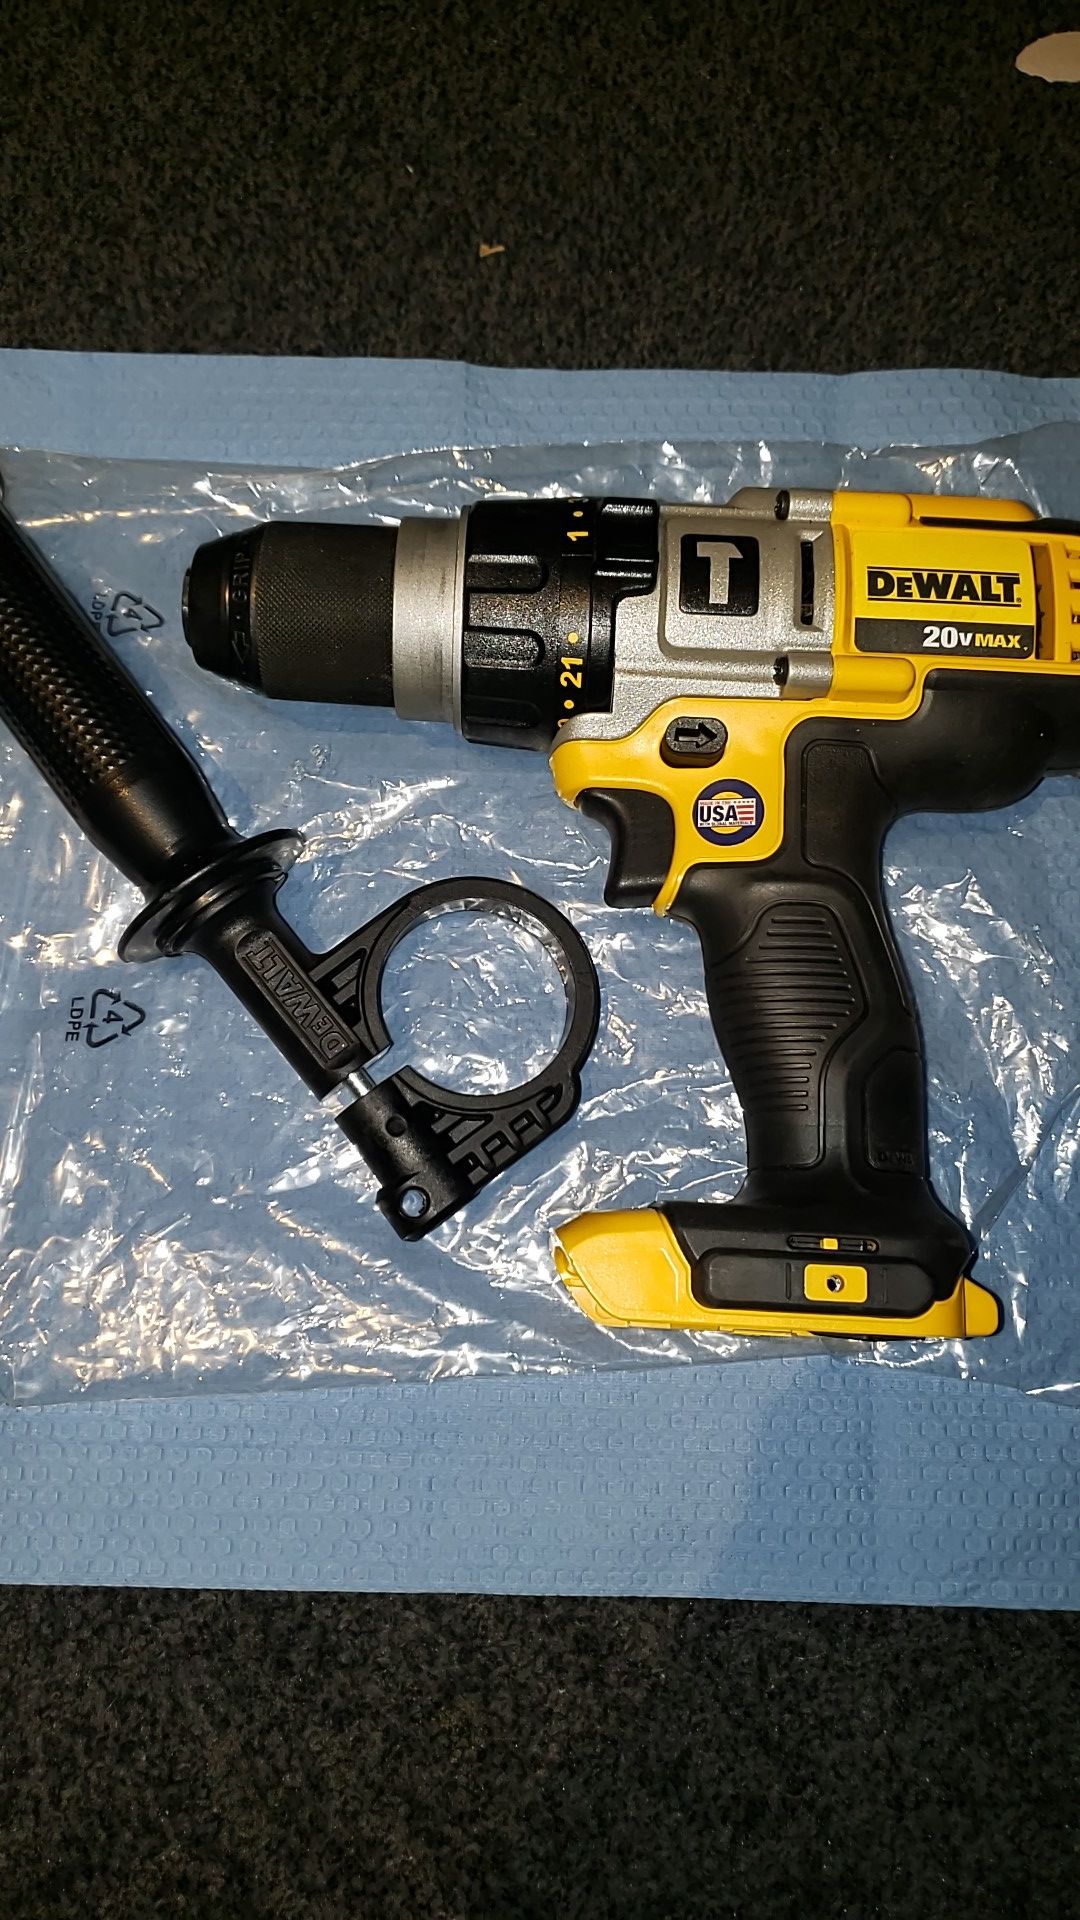 Brand new Dewalt 20v hammer drill made in USA